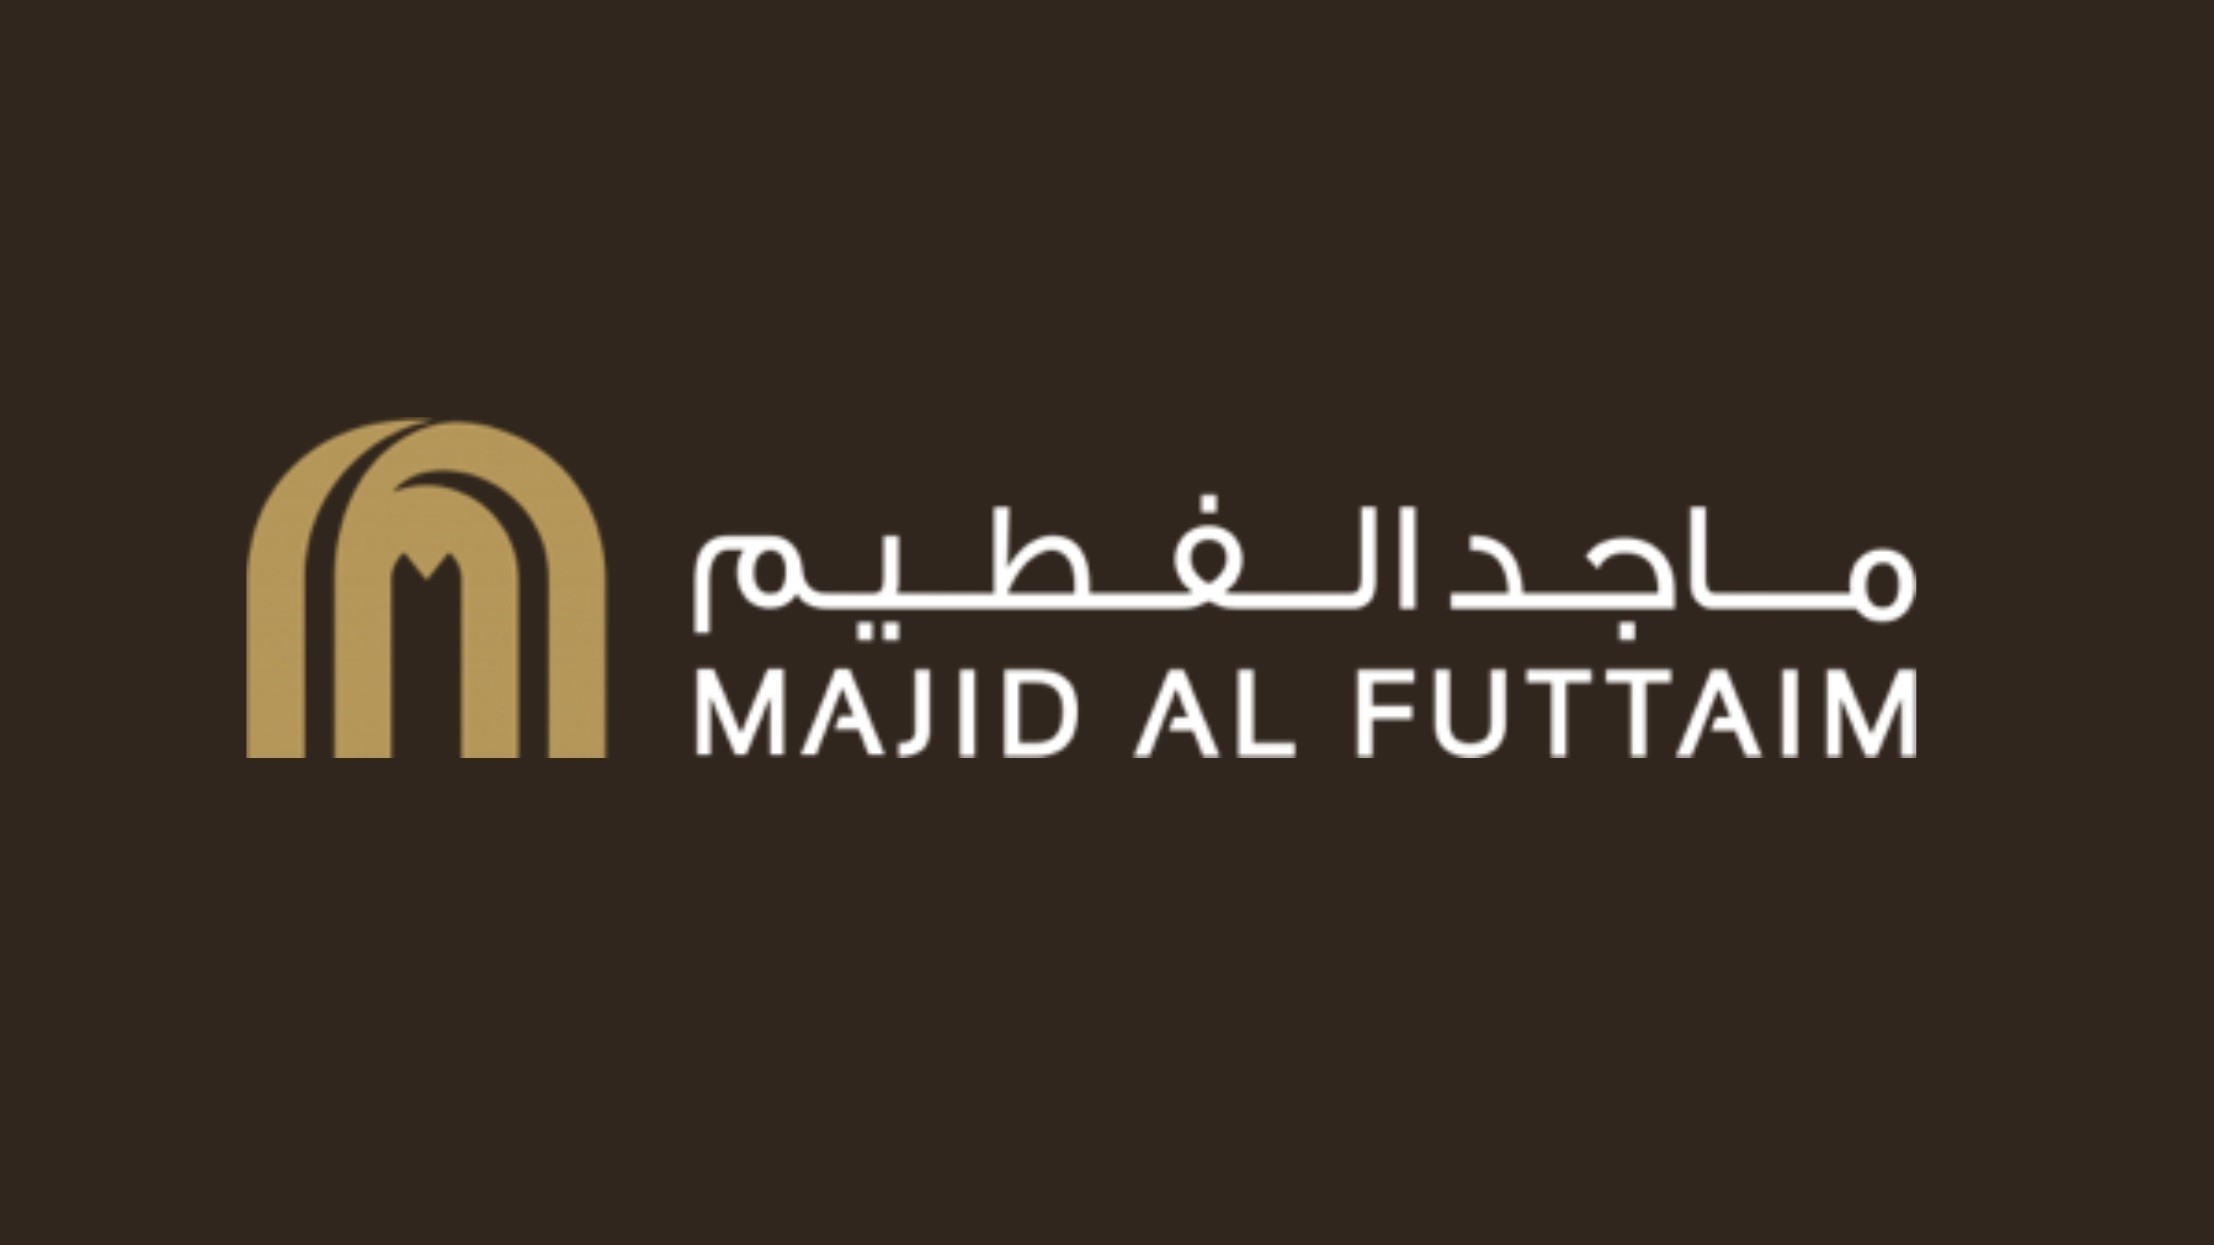 Majid Al Futtaim Holding